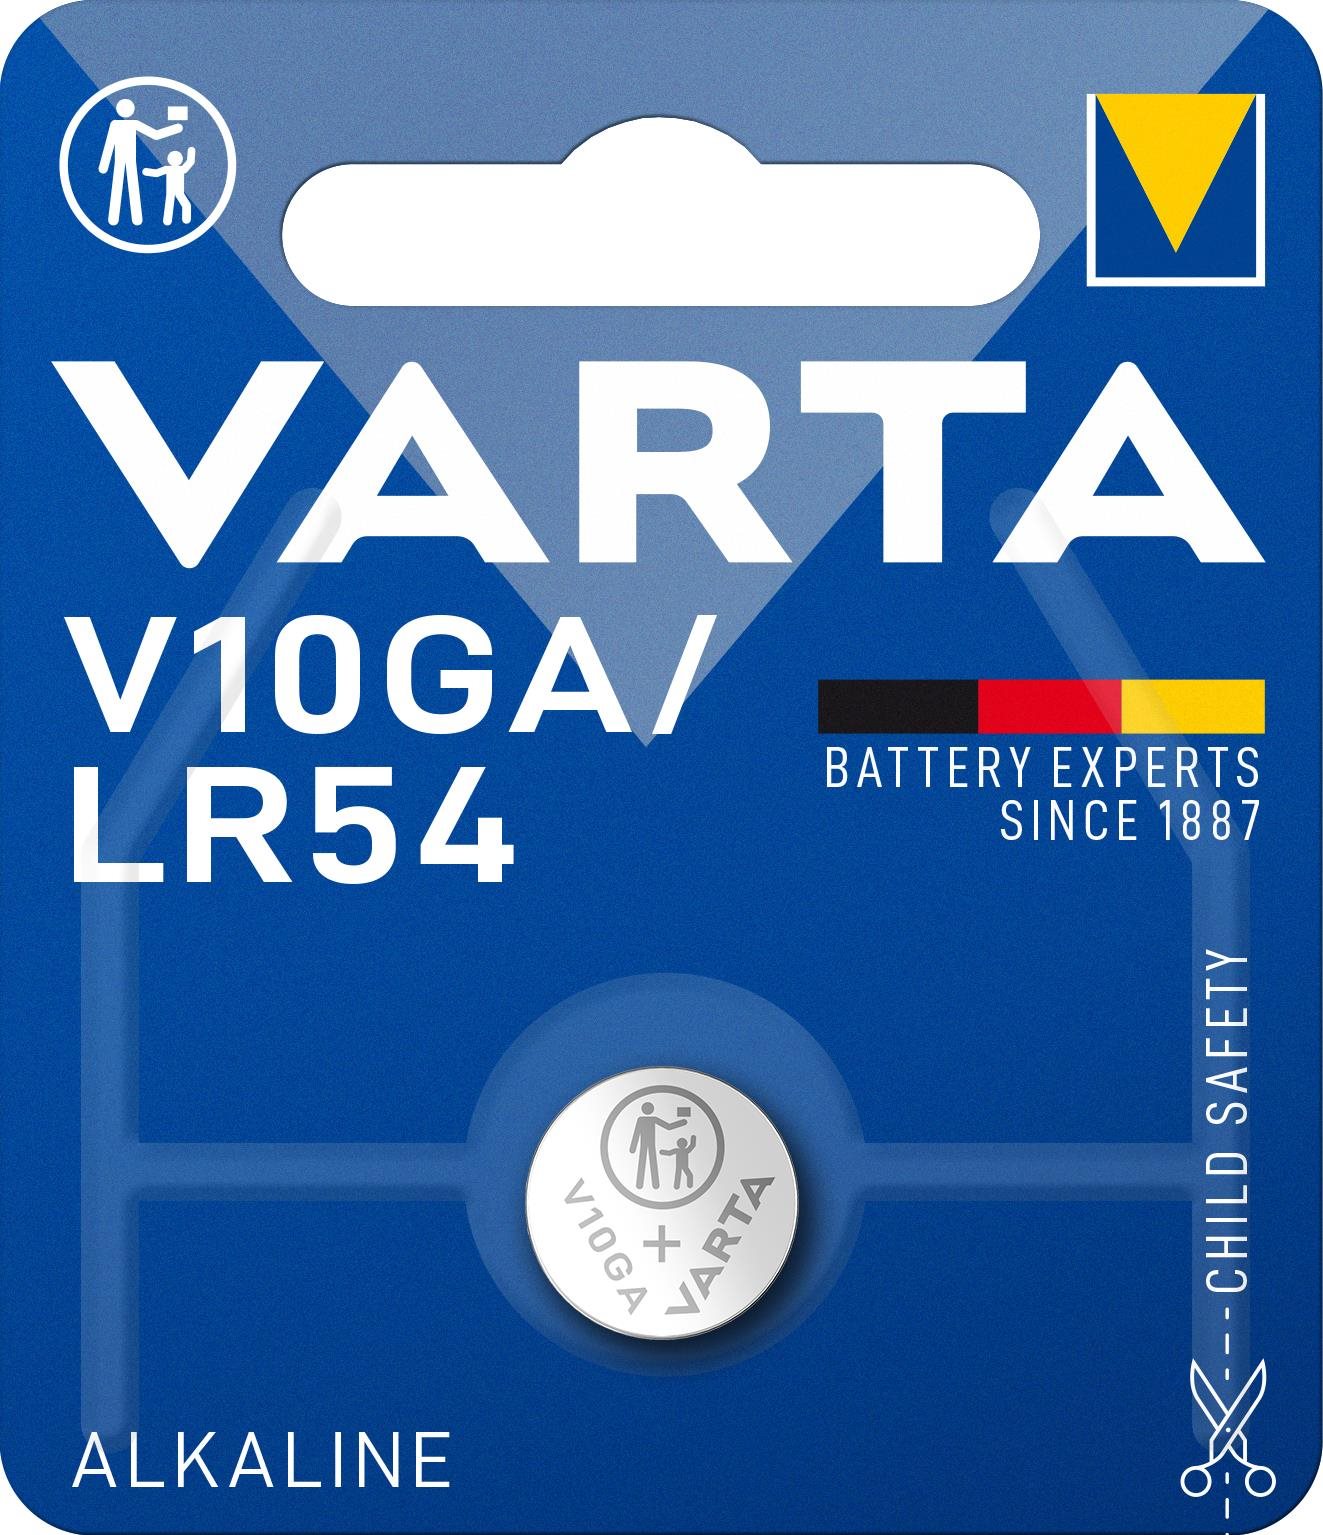 VARTA V10GA/LR54 Speciális alkáli elem - 1 db